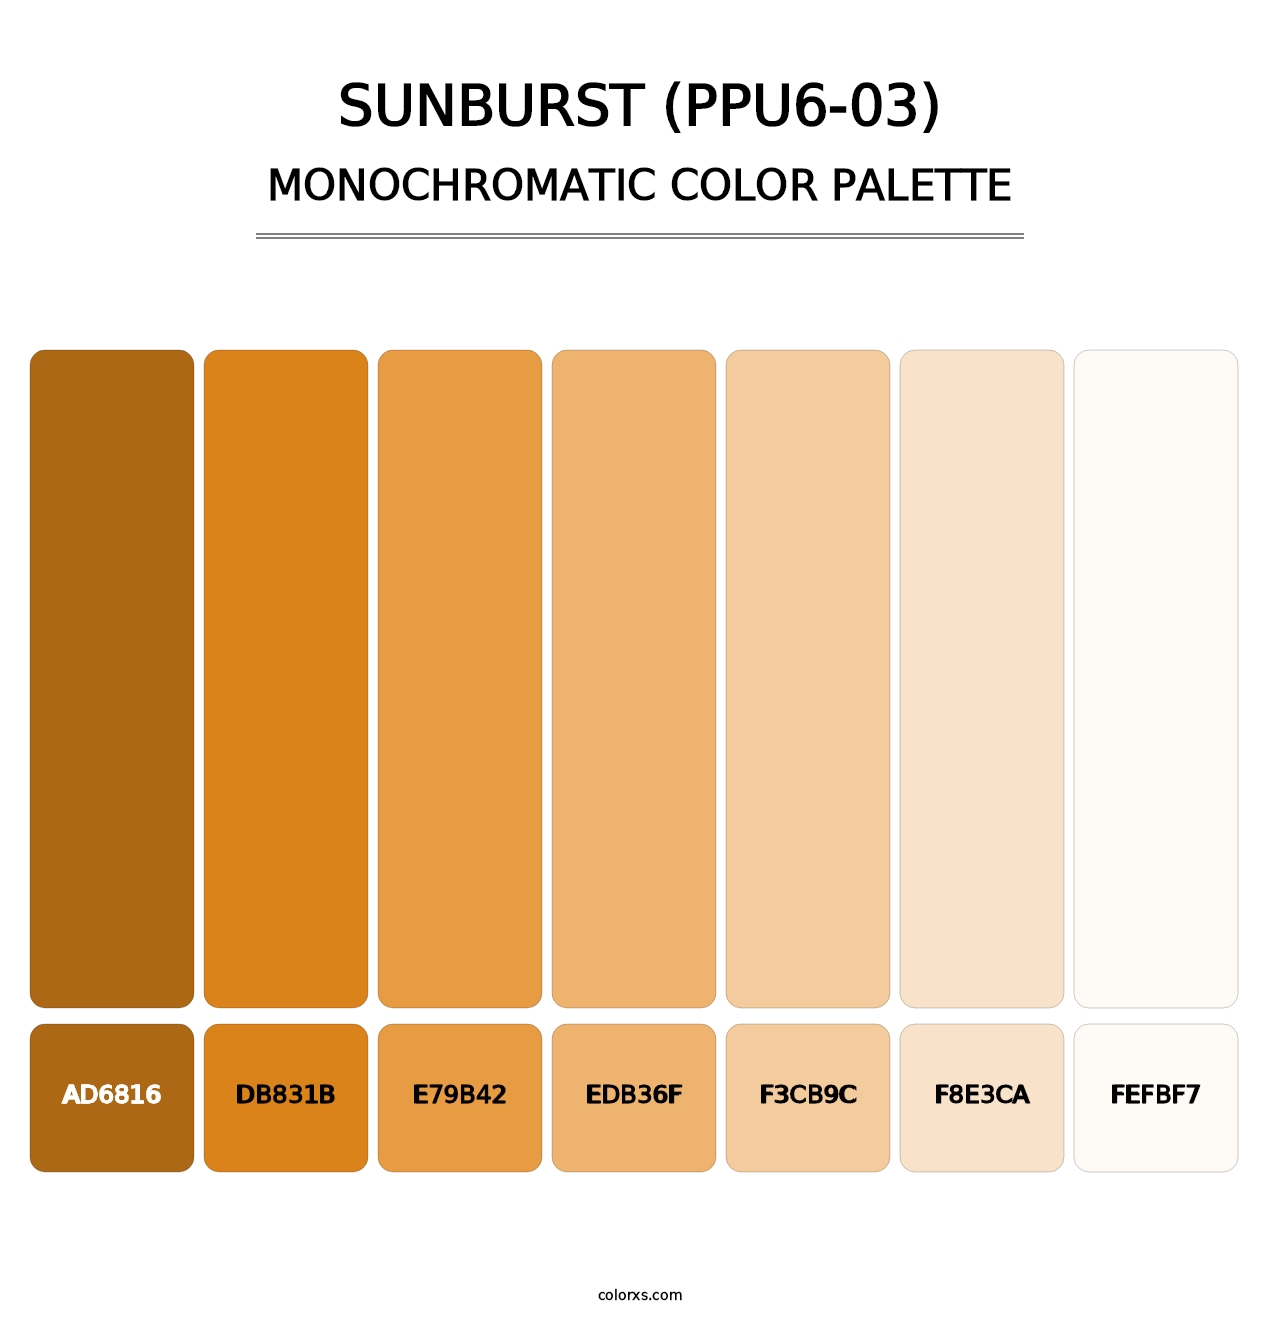 Sunburst (PPU6-03) - Monochromatic Color Palette